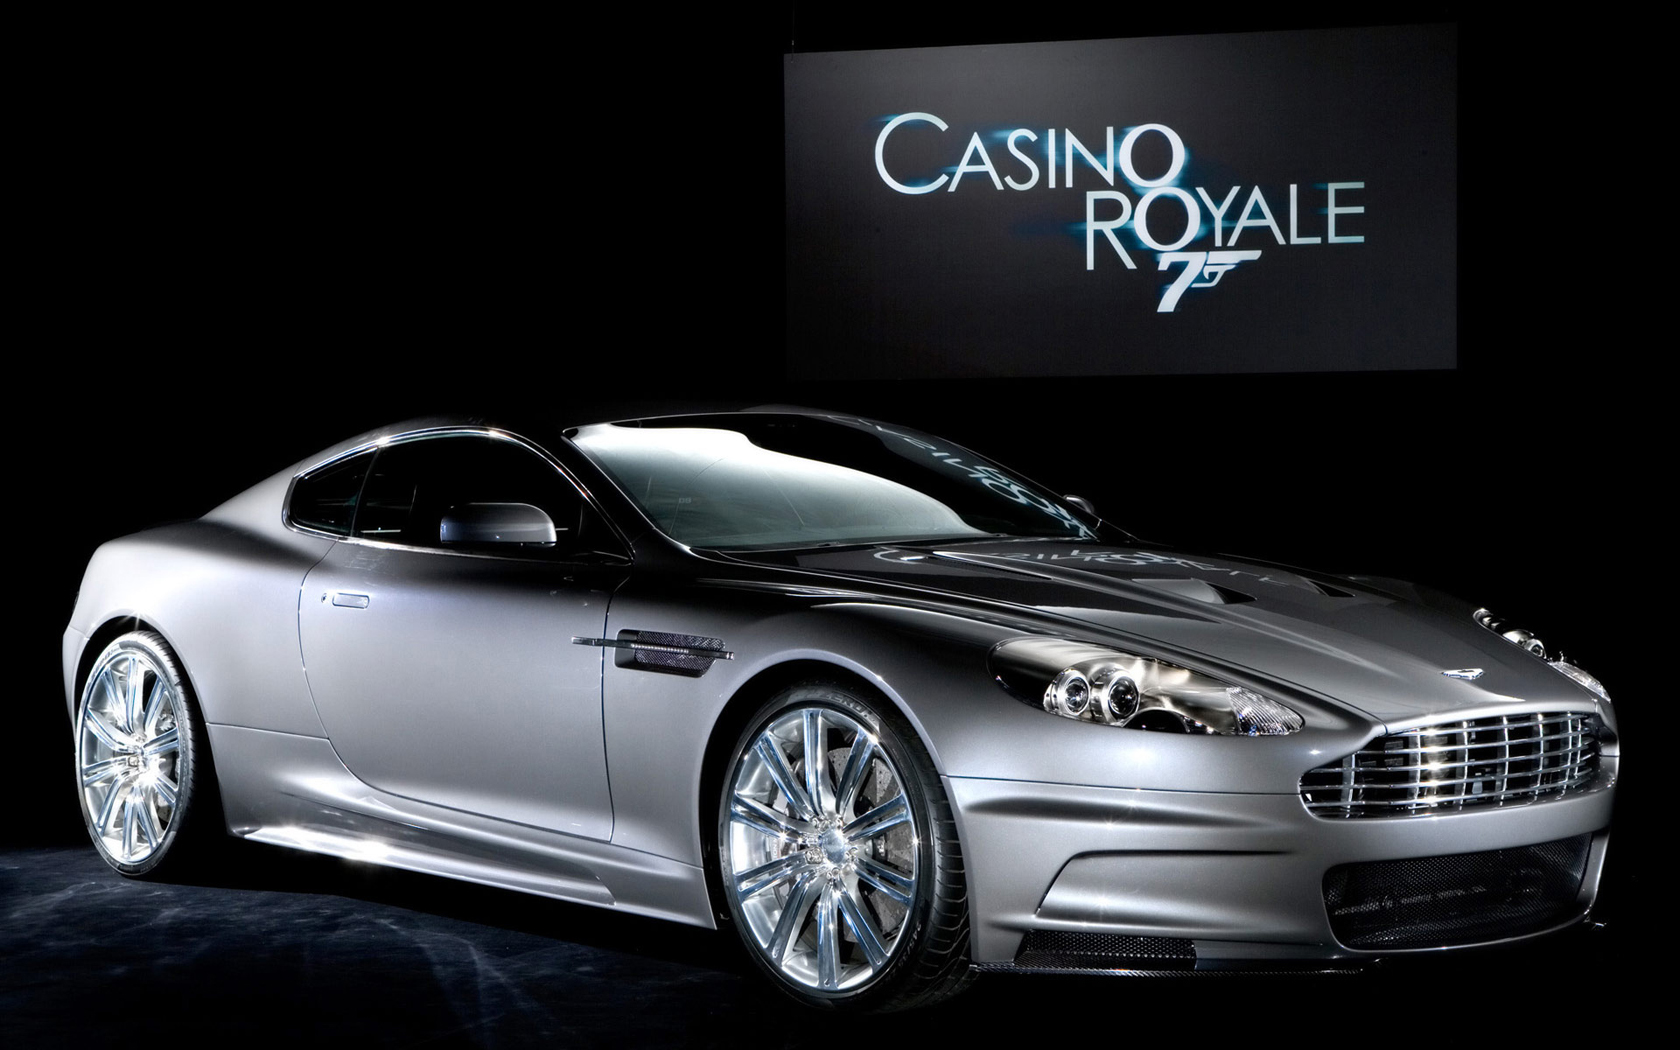 Los mejores fondos de pantalla de Casino Royale para la pantalla del teléfono